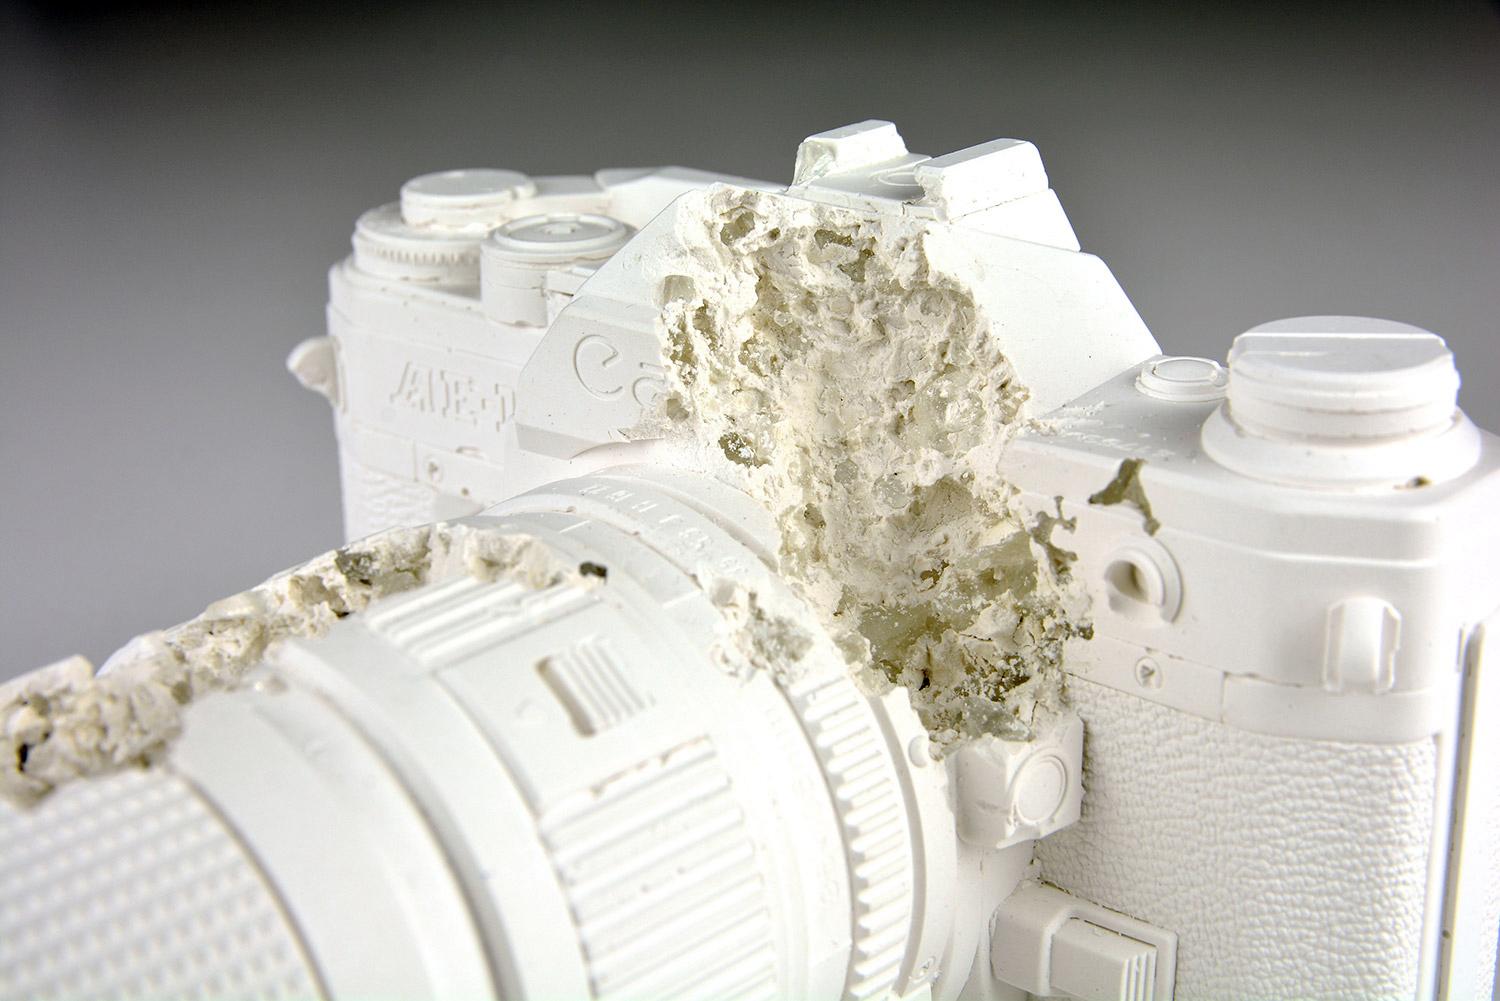 FUTURE RELIC 02 - Sculpture en édition limitée - Design d'art moderne - Photographie 35 mm - Concept Canon 2